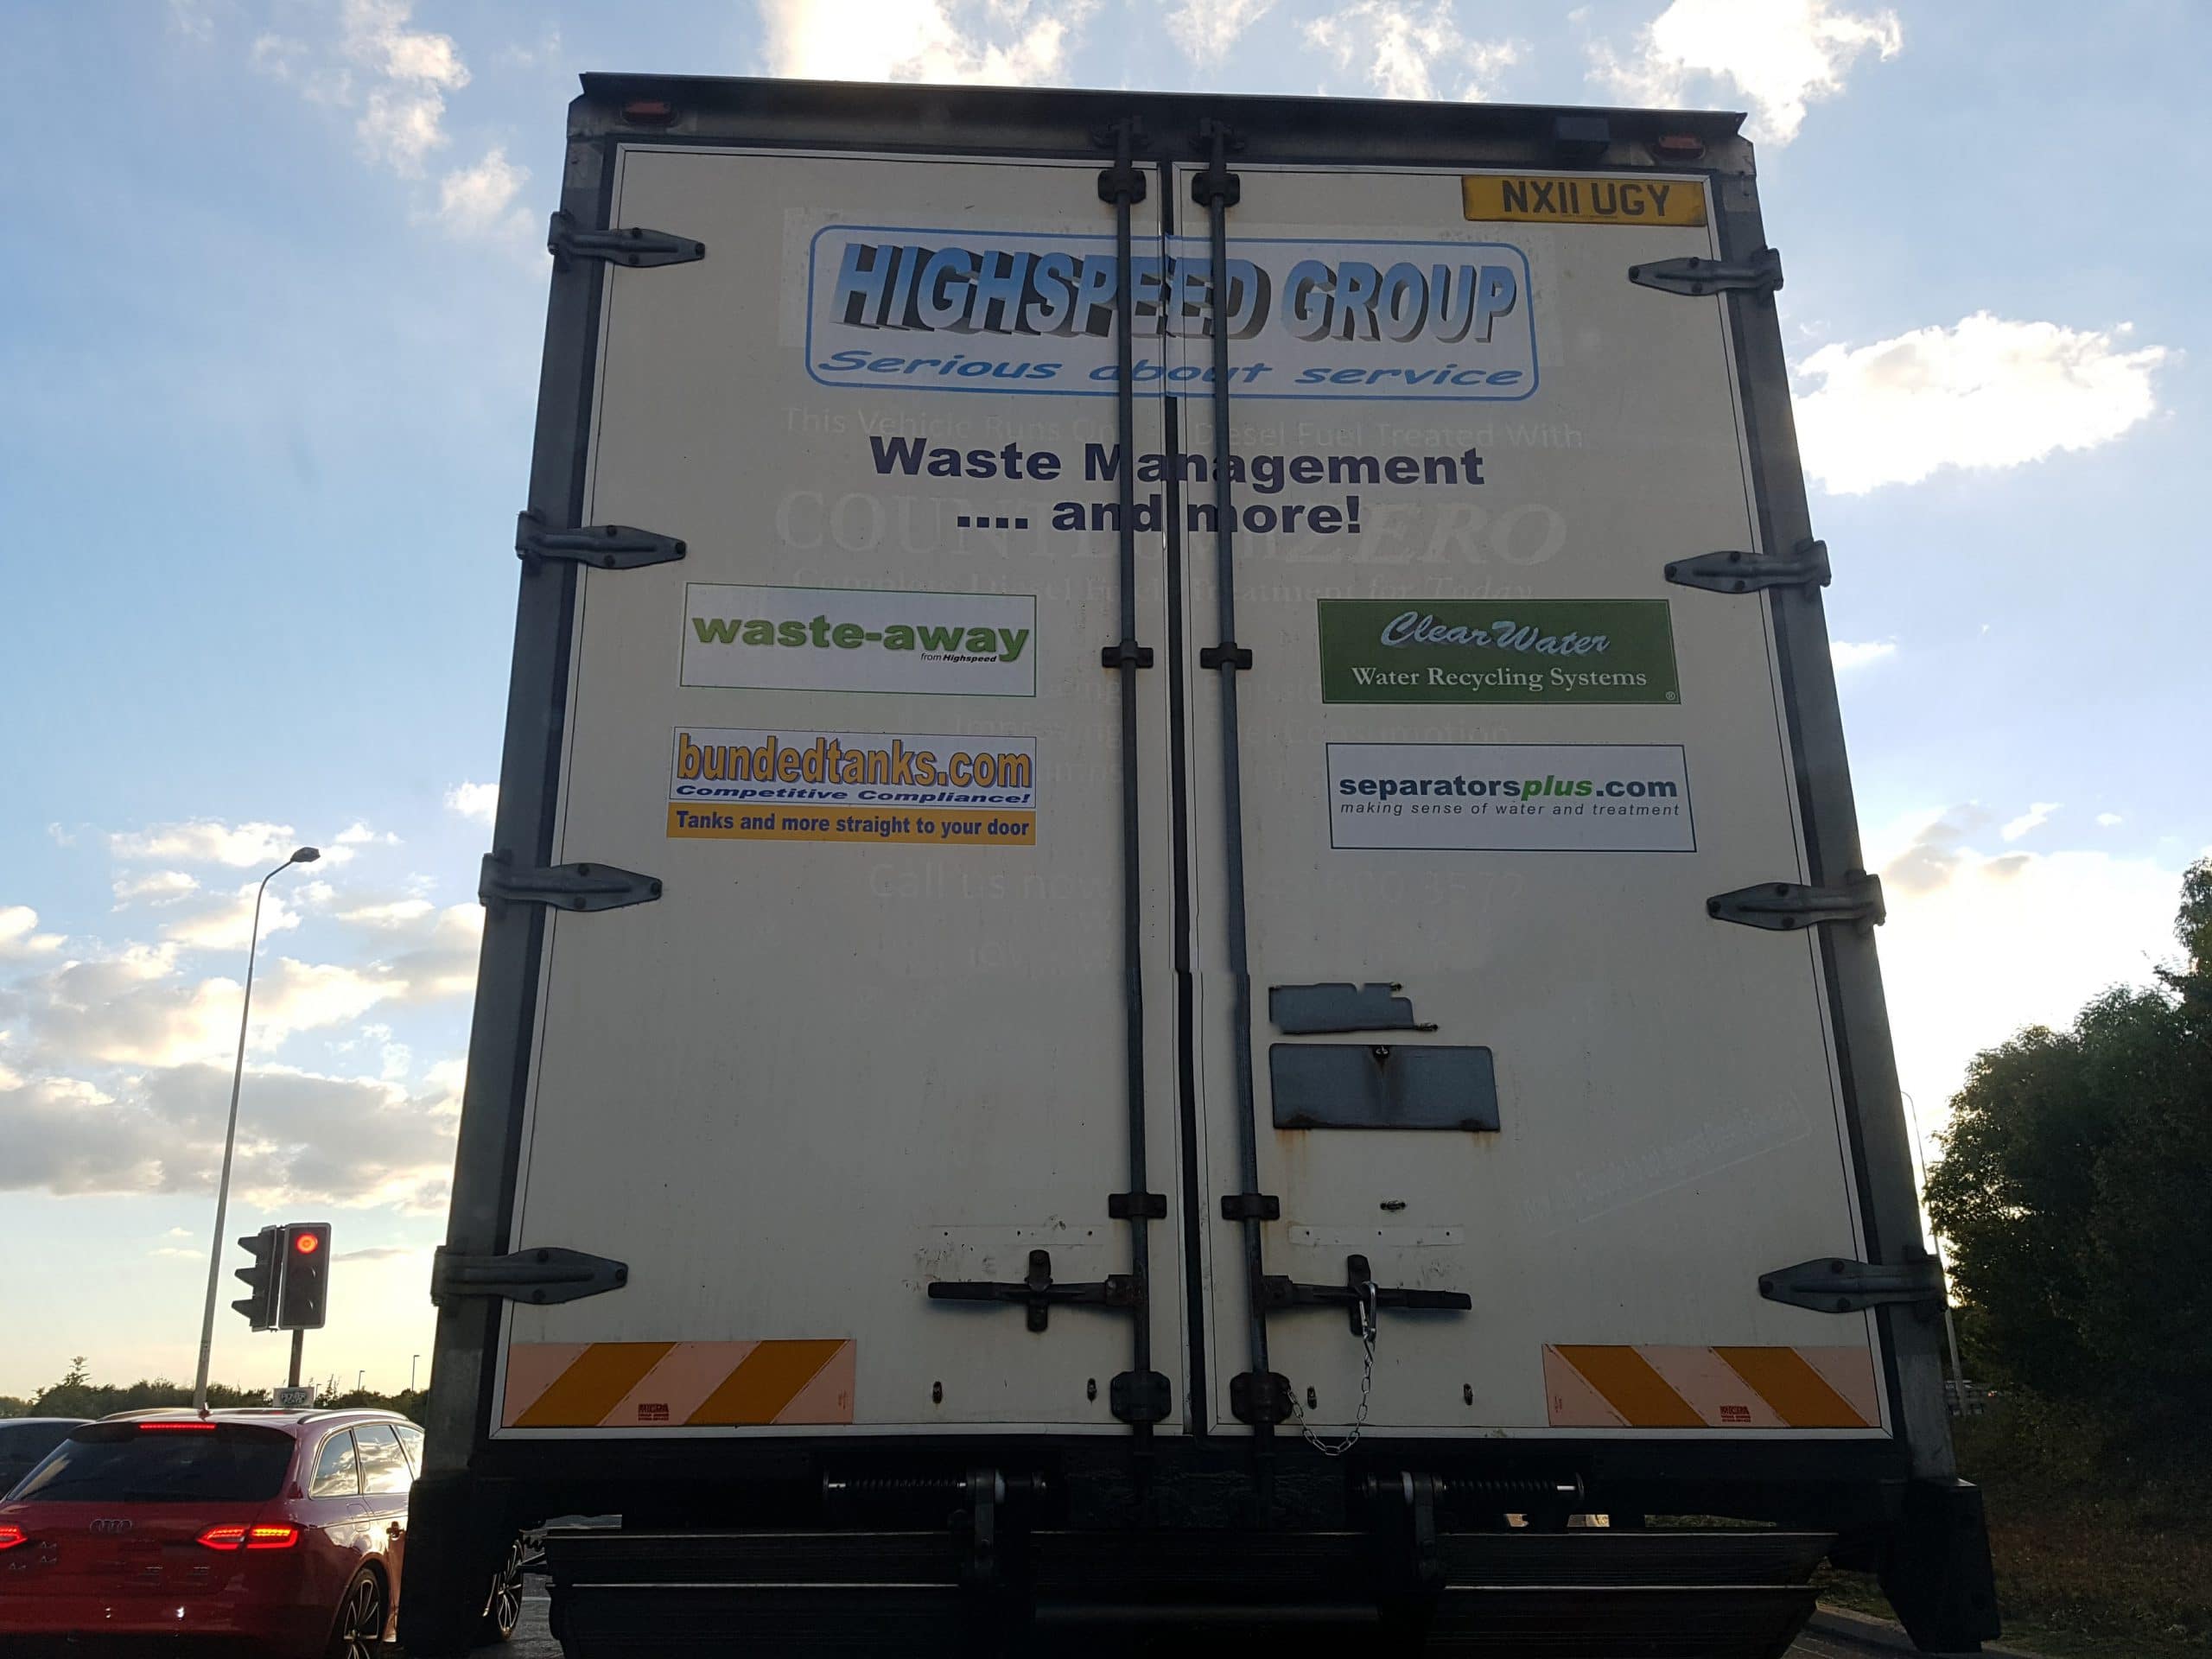 Sidebar: Truck logos